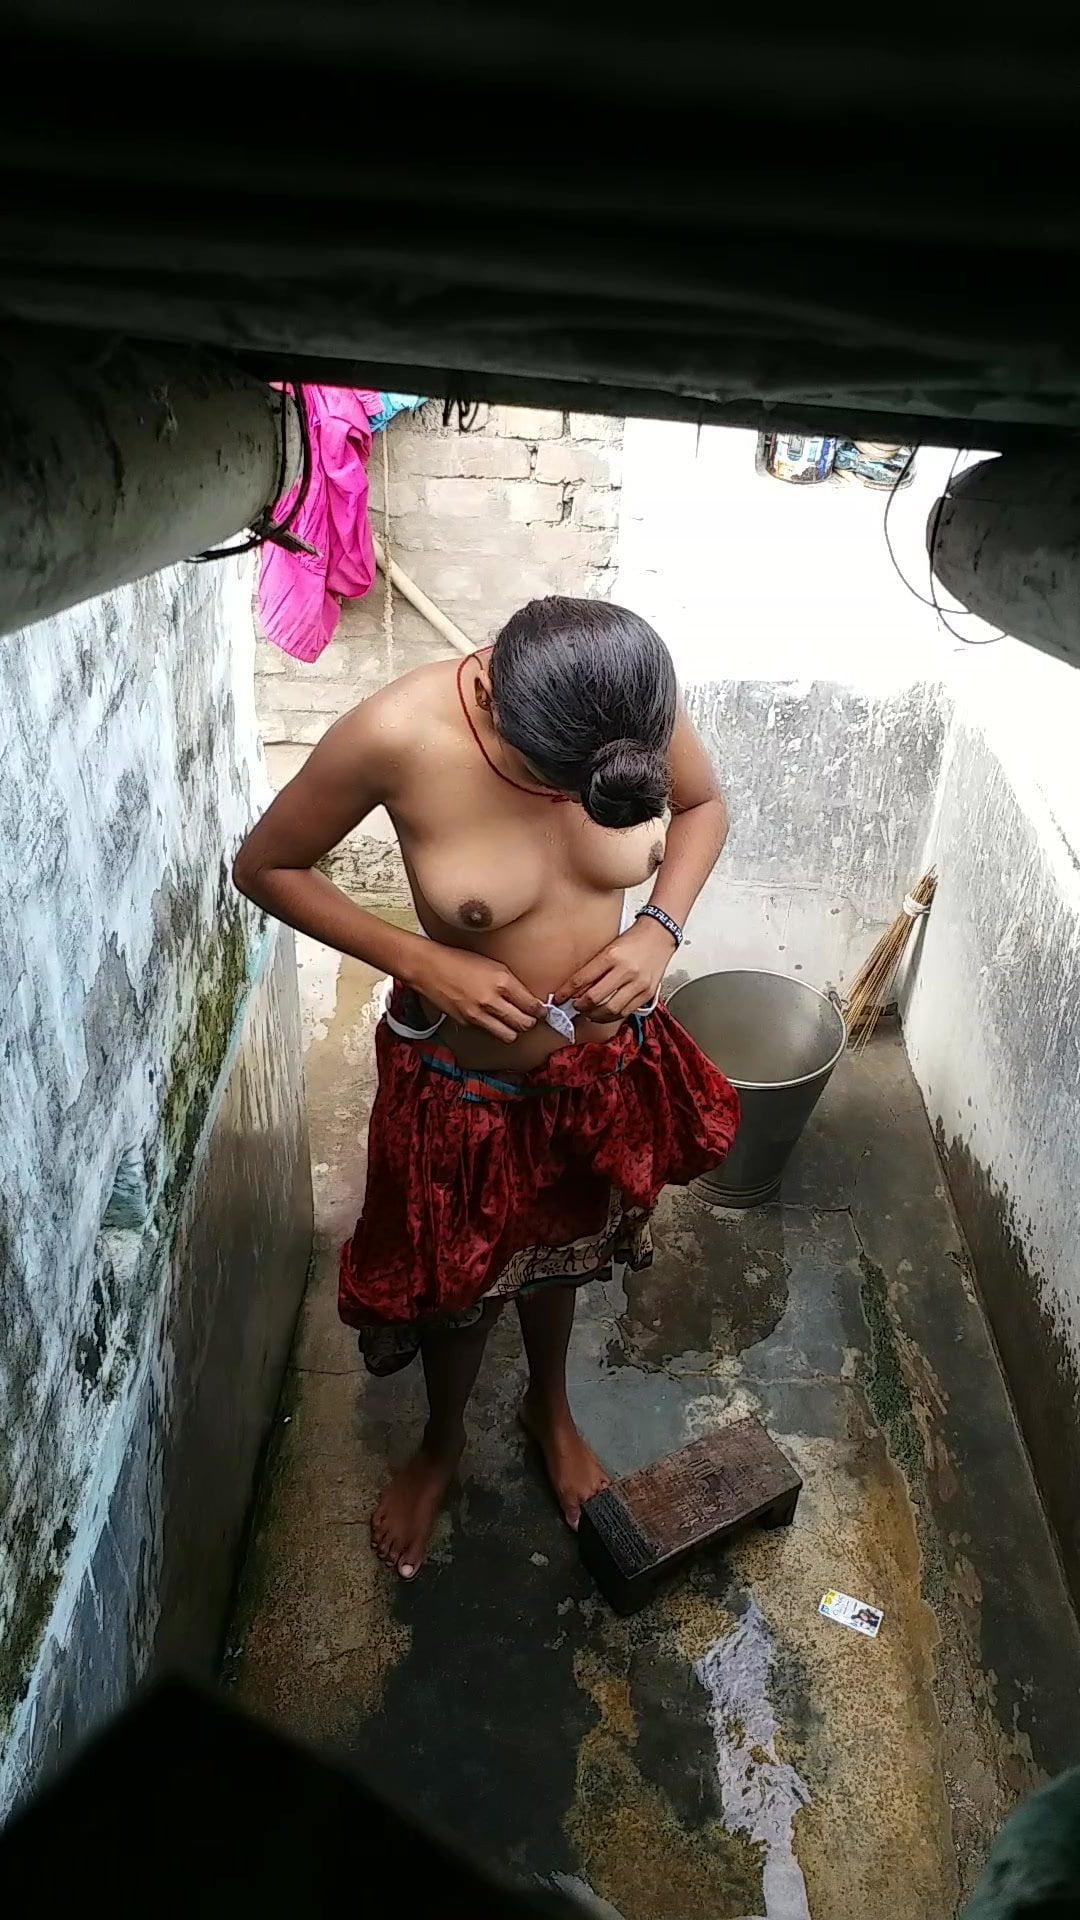 Chennai Ladki Ki Sexy Video Nangi Scene Hd - Saali Ki Chudai Bathroom Me, Free Indian Porn cc: xHamster